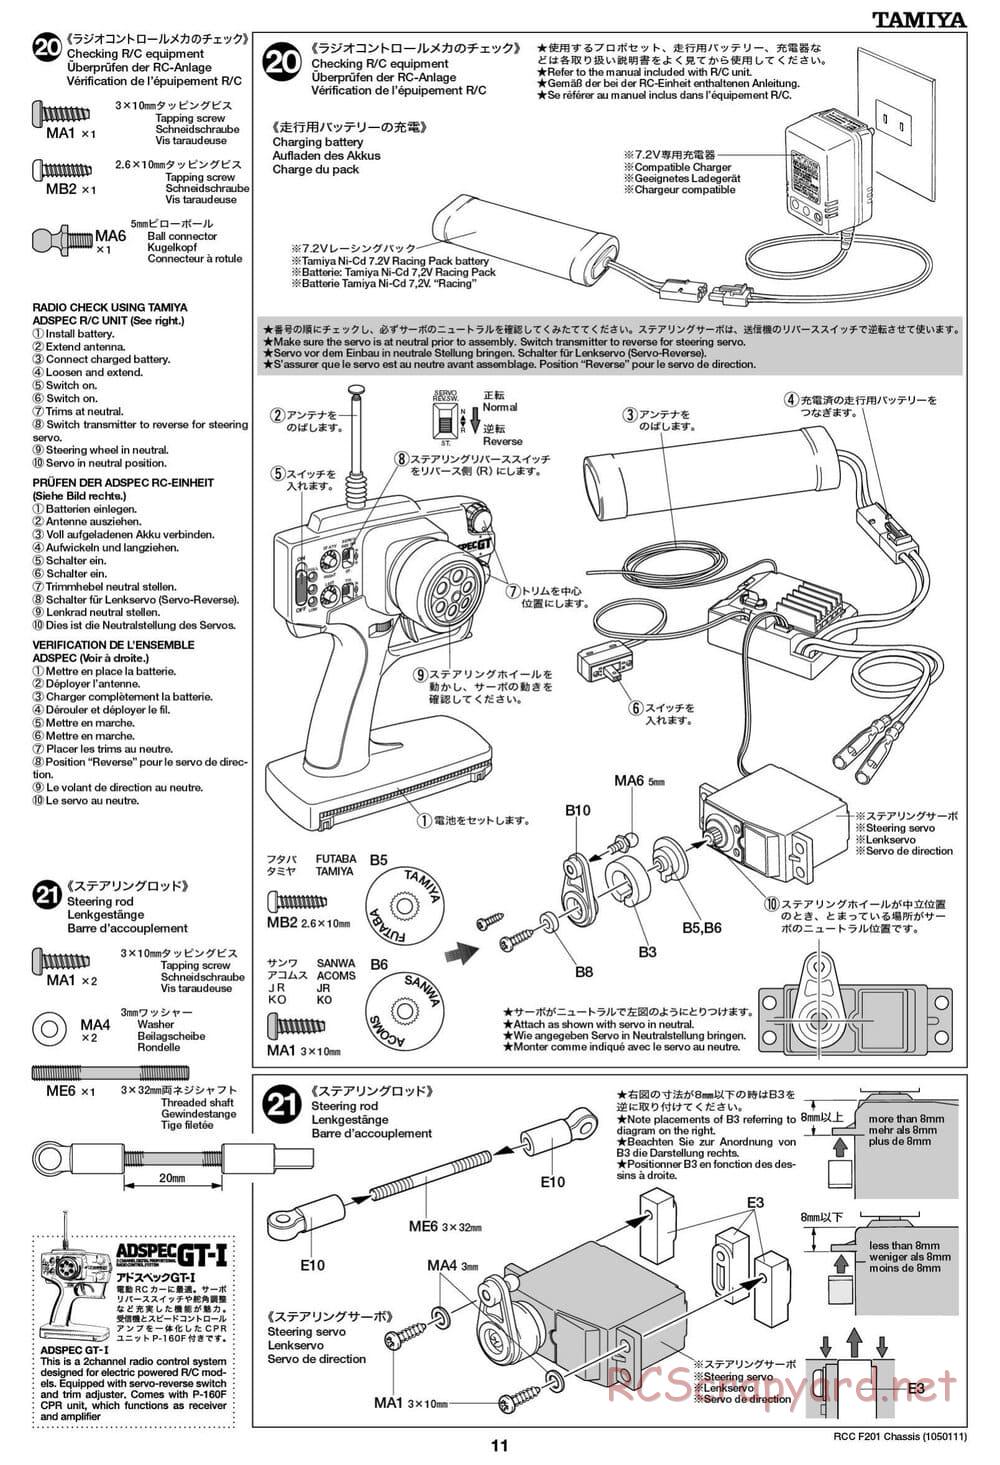 Tamiya - F201 Chassis - Manual - Page 11